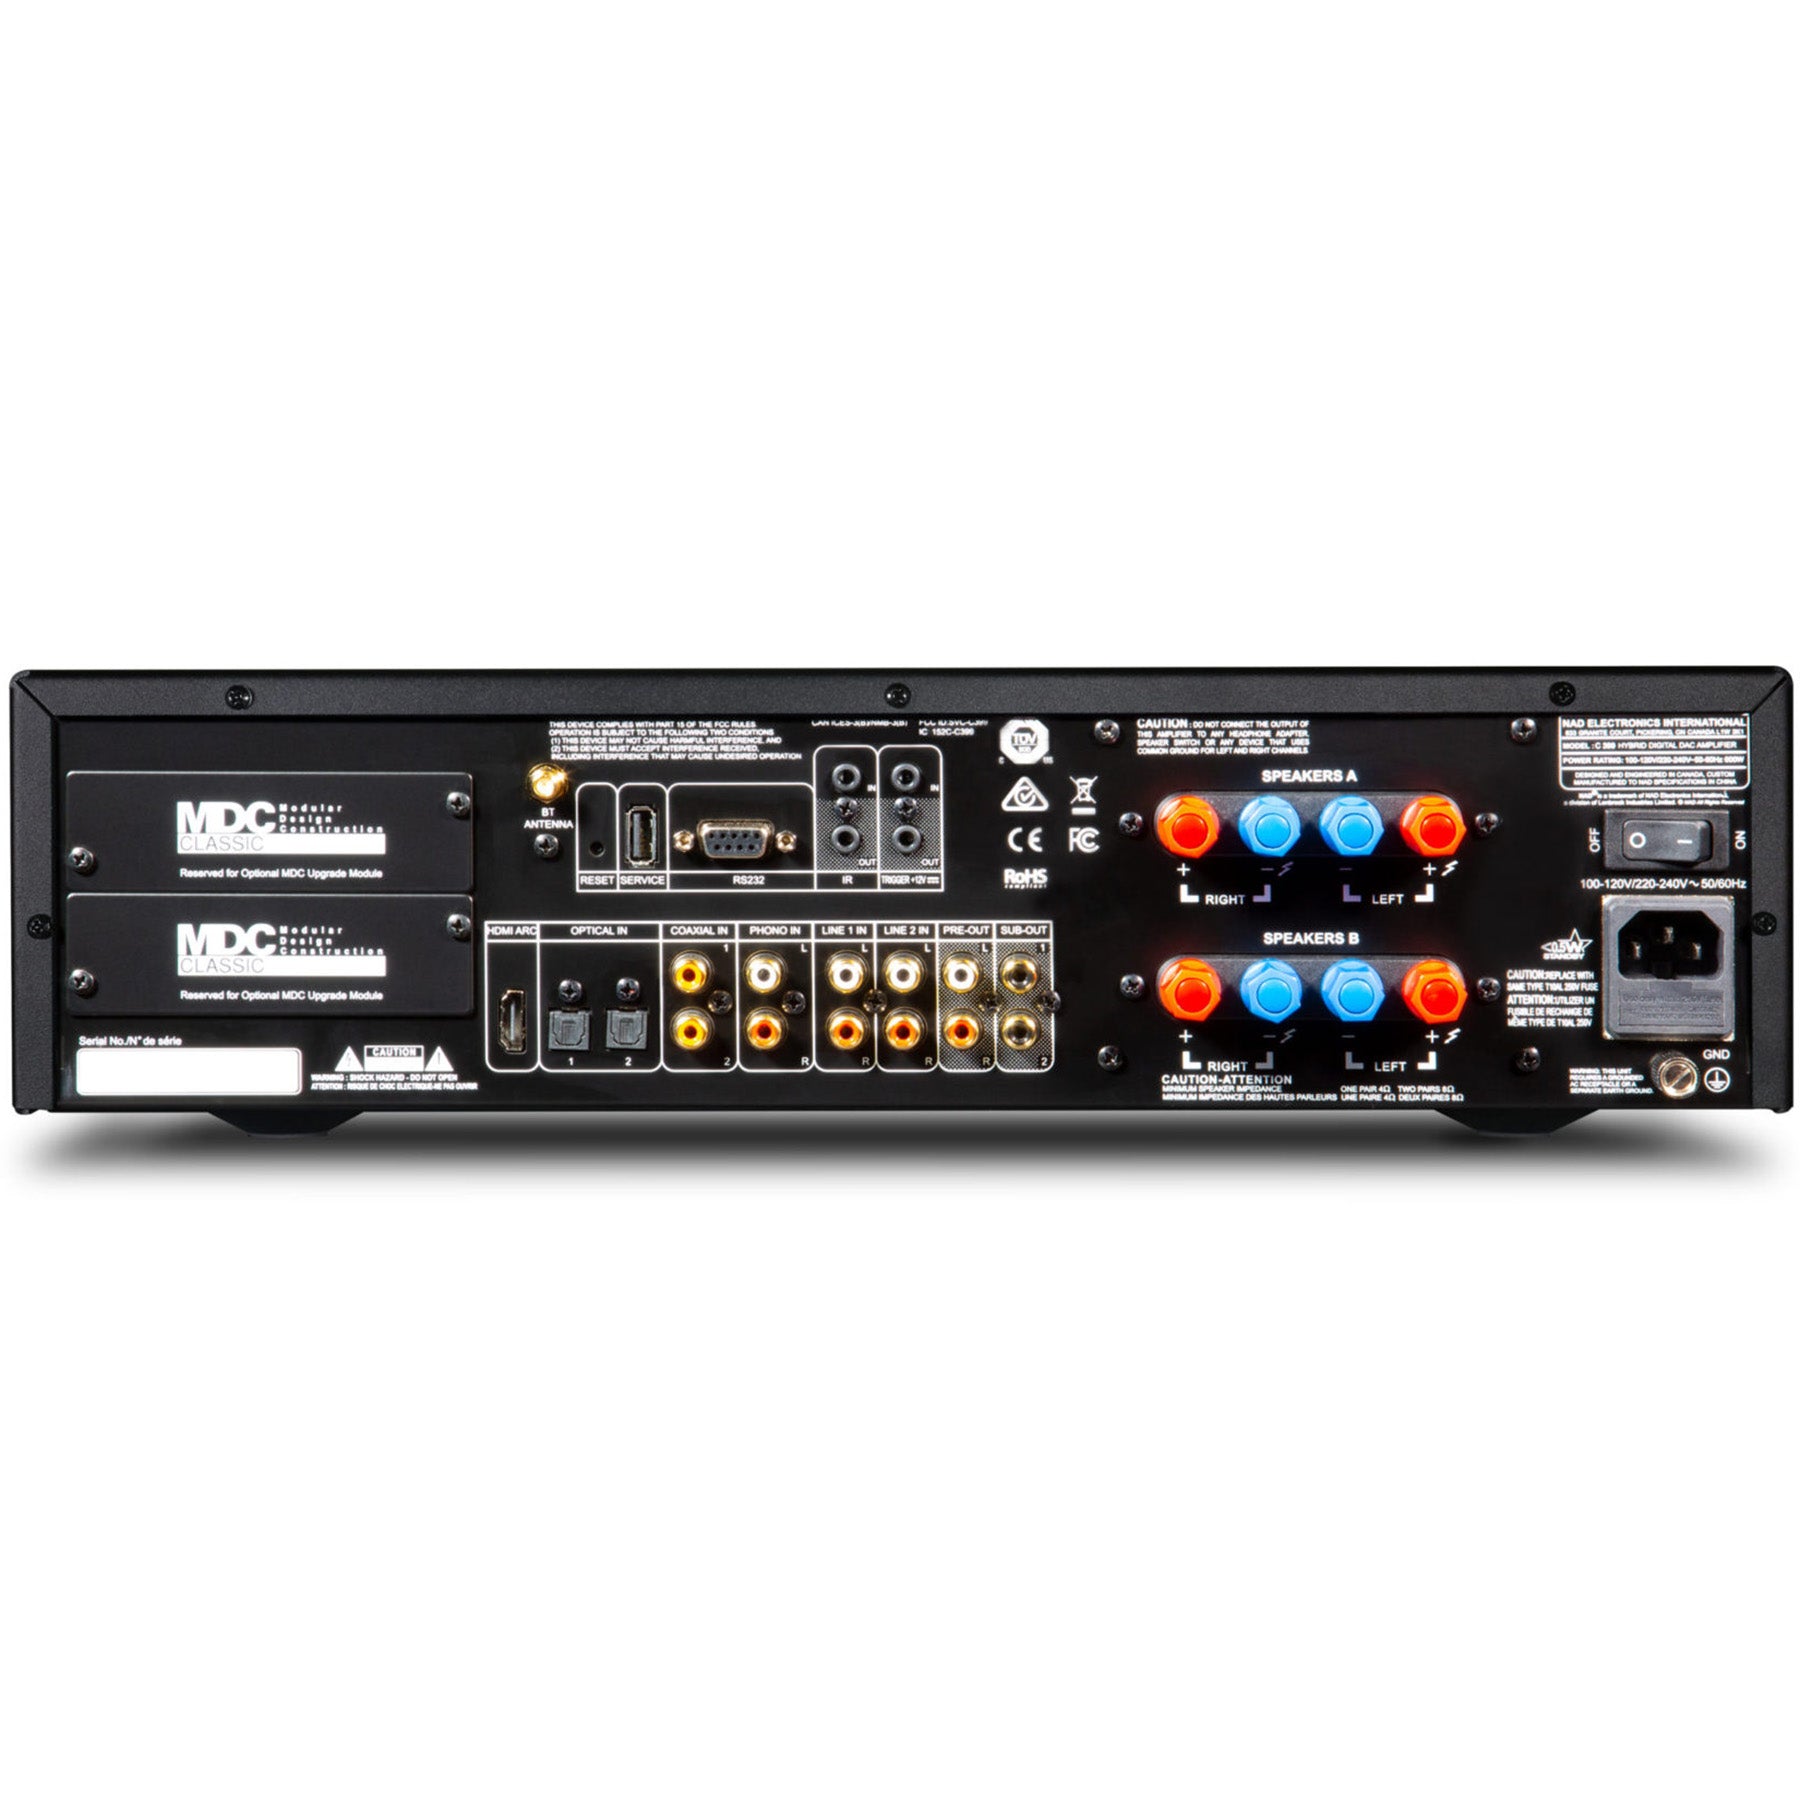 NAD C 399 Hybrid Digital DAC Amplifier